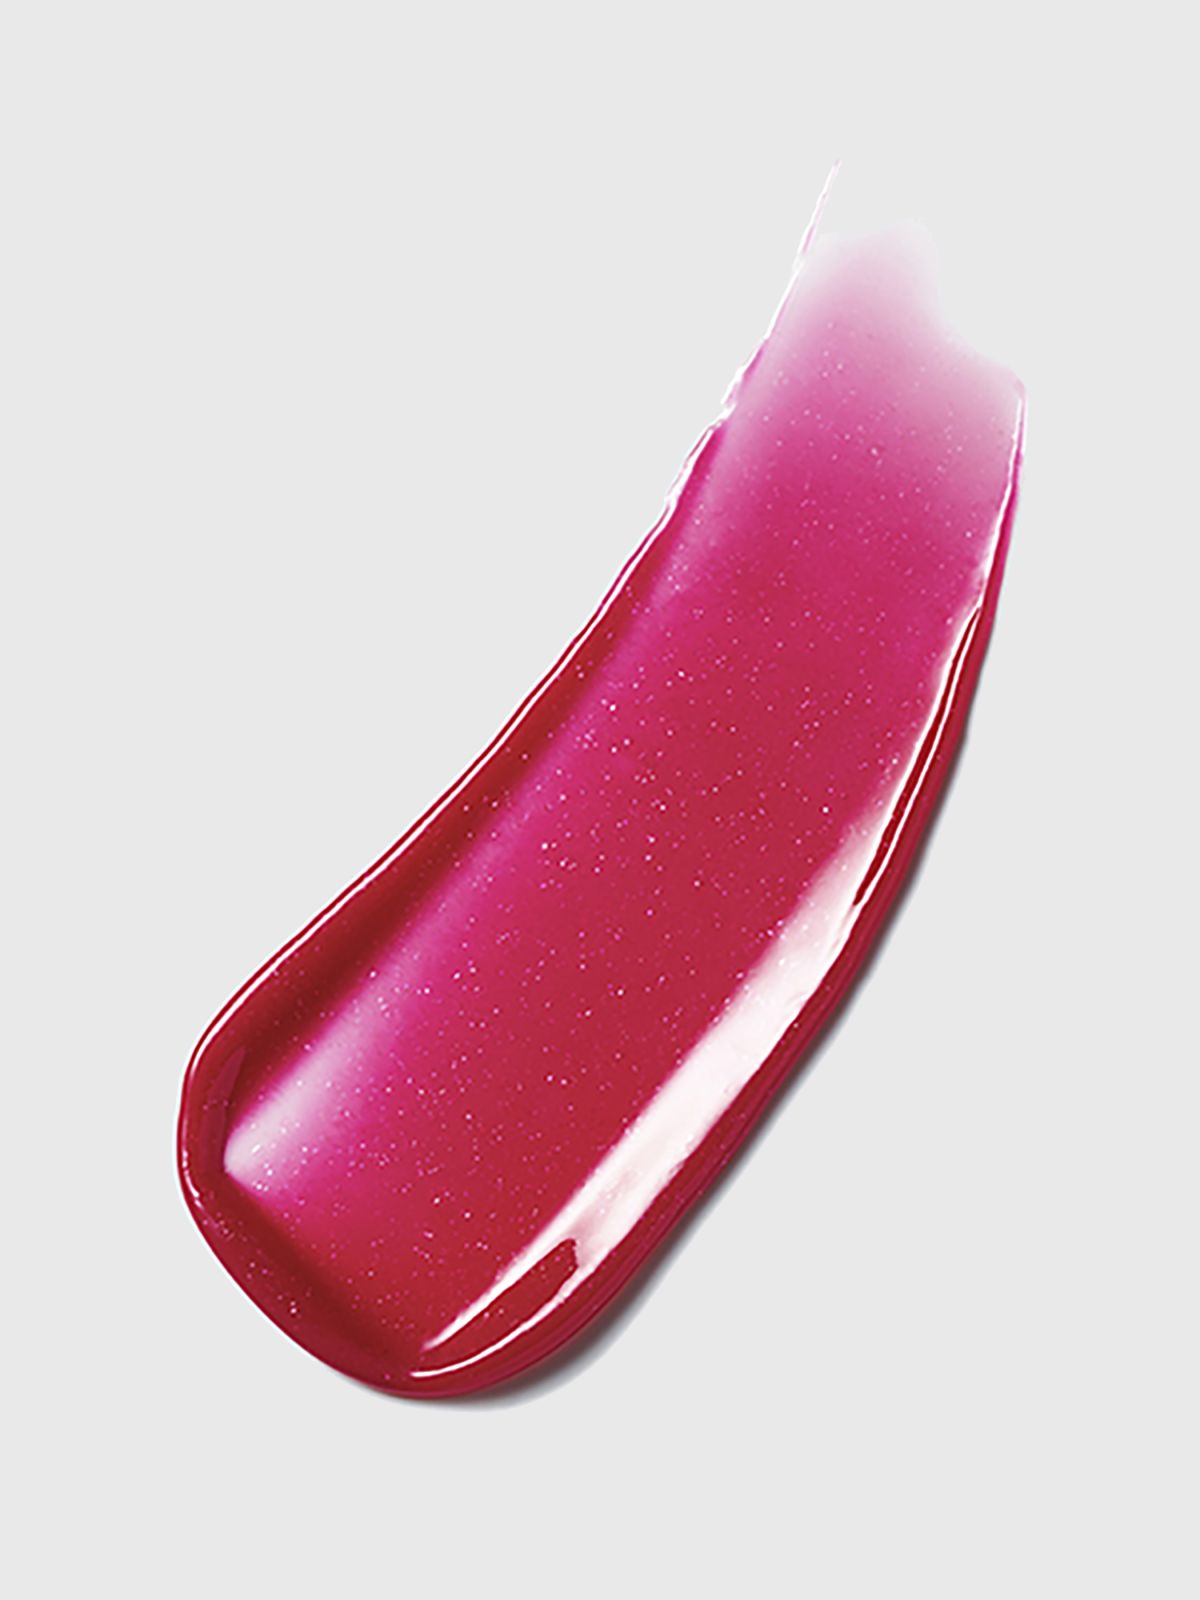  שפתון לחות עם גוון פיור קולור רויטליזינג קריסטל באלם Pure Color Revitalizing Crystal Balm של ESTEE LAUDER